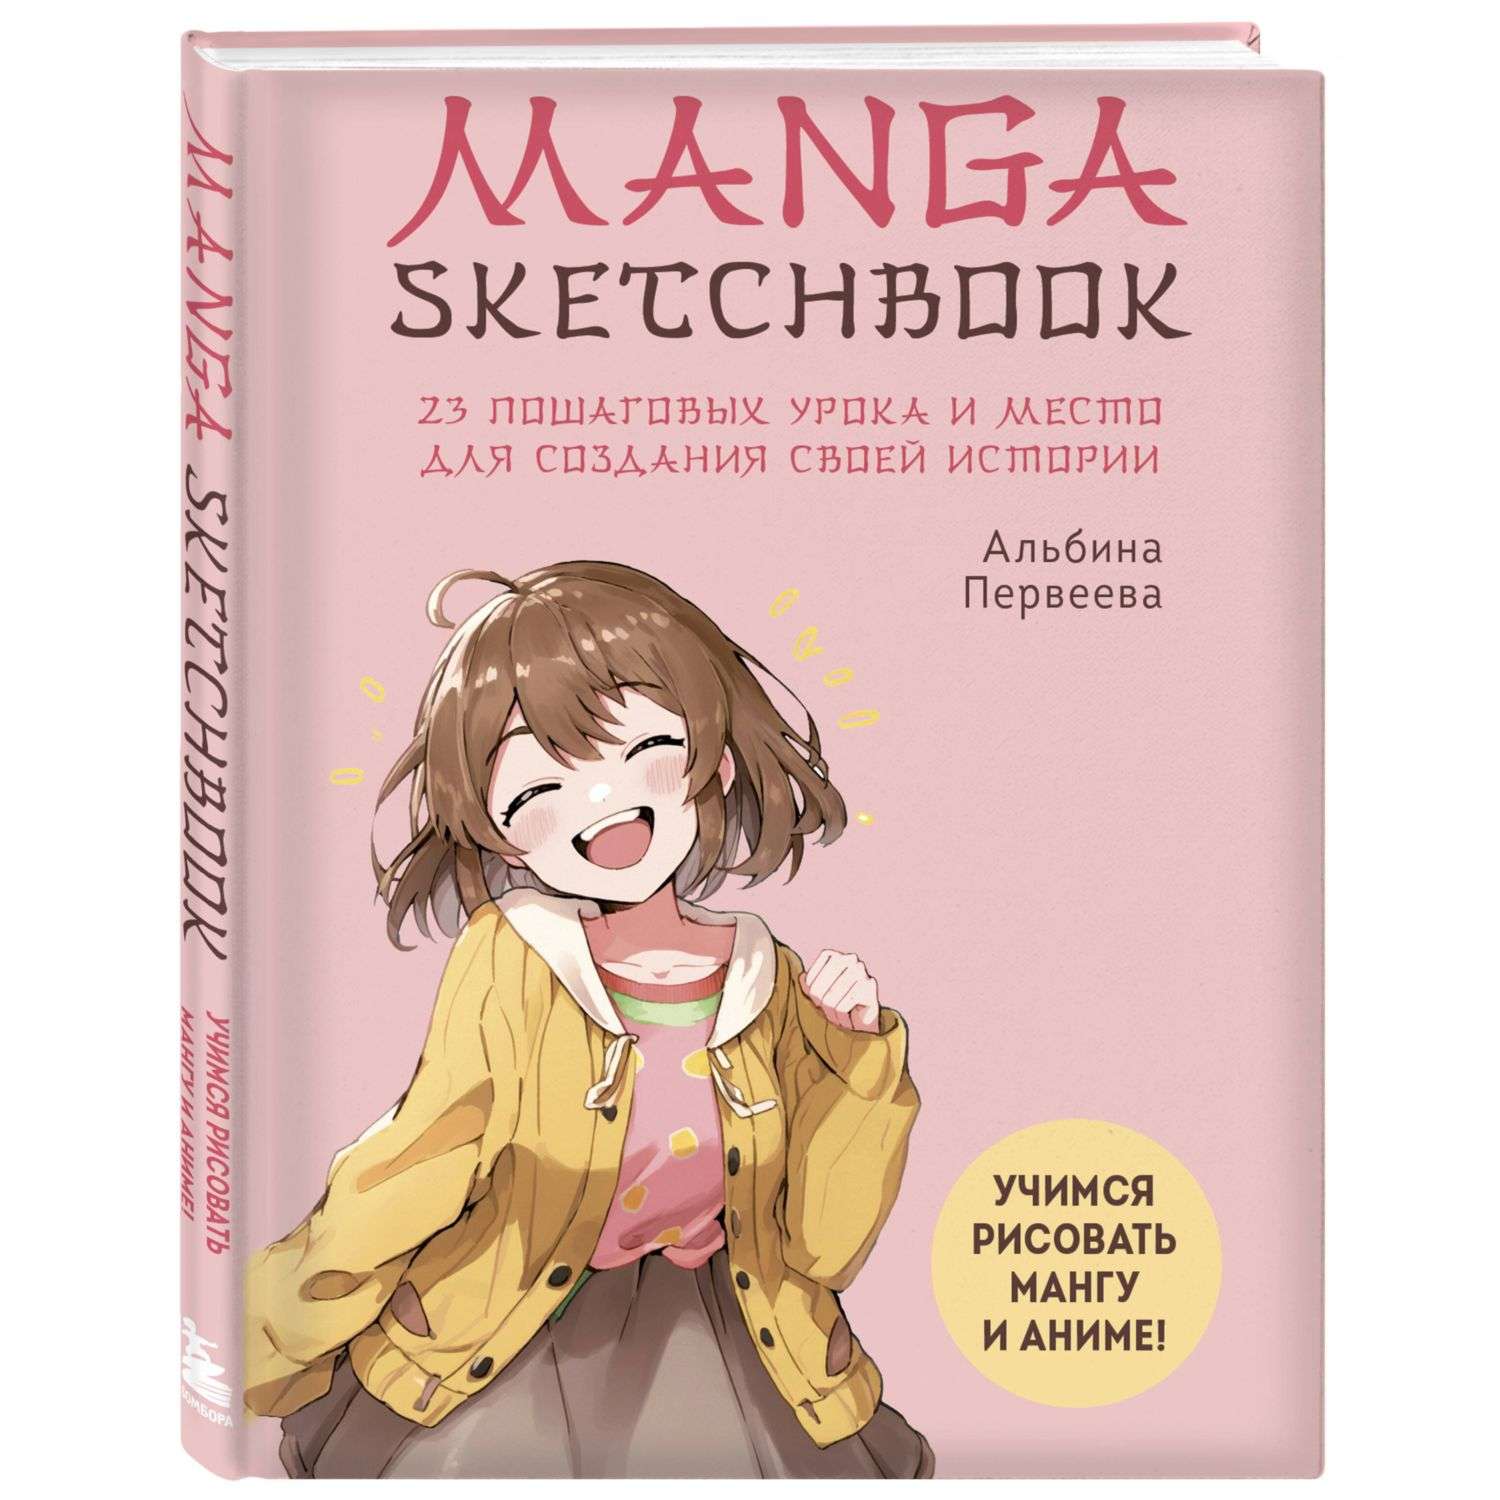 Книга Manga Sketchbook Учимся рисовать мангу и аниме 23 пошаговых урока и место для создания своей истории - фото 1